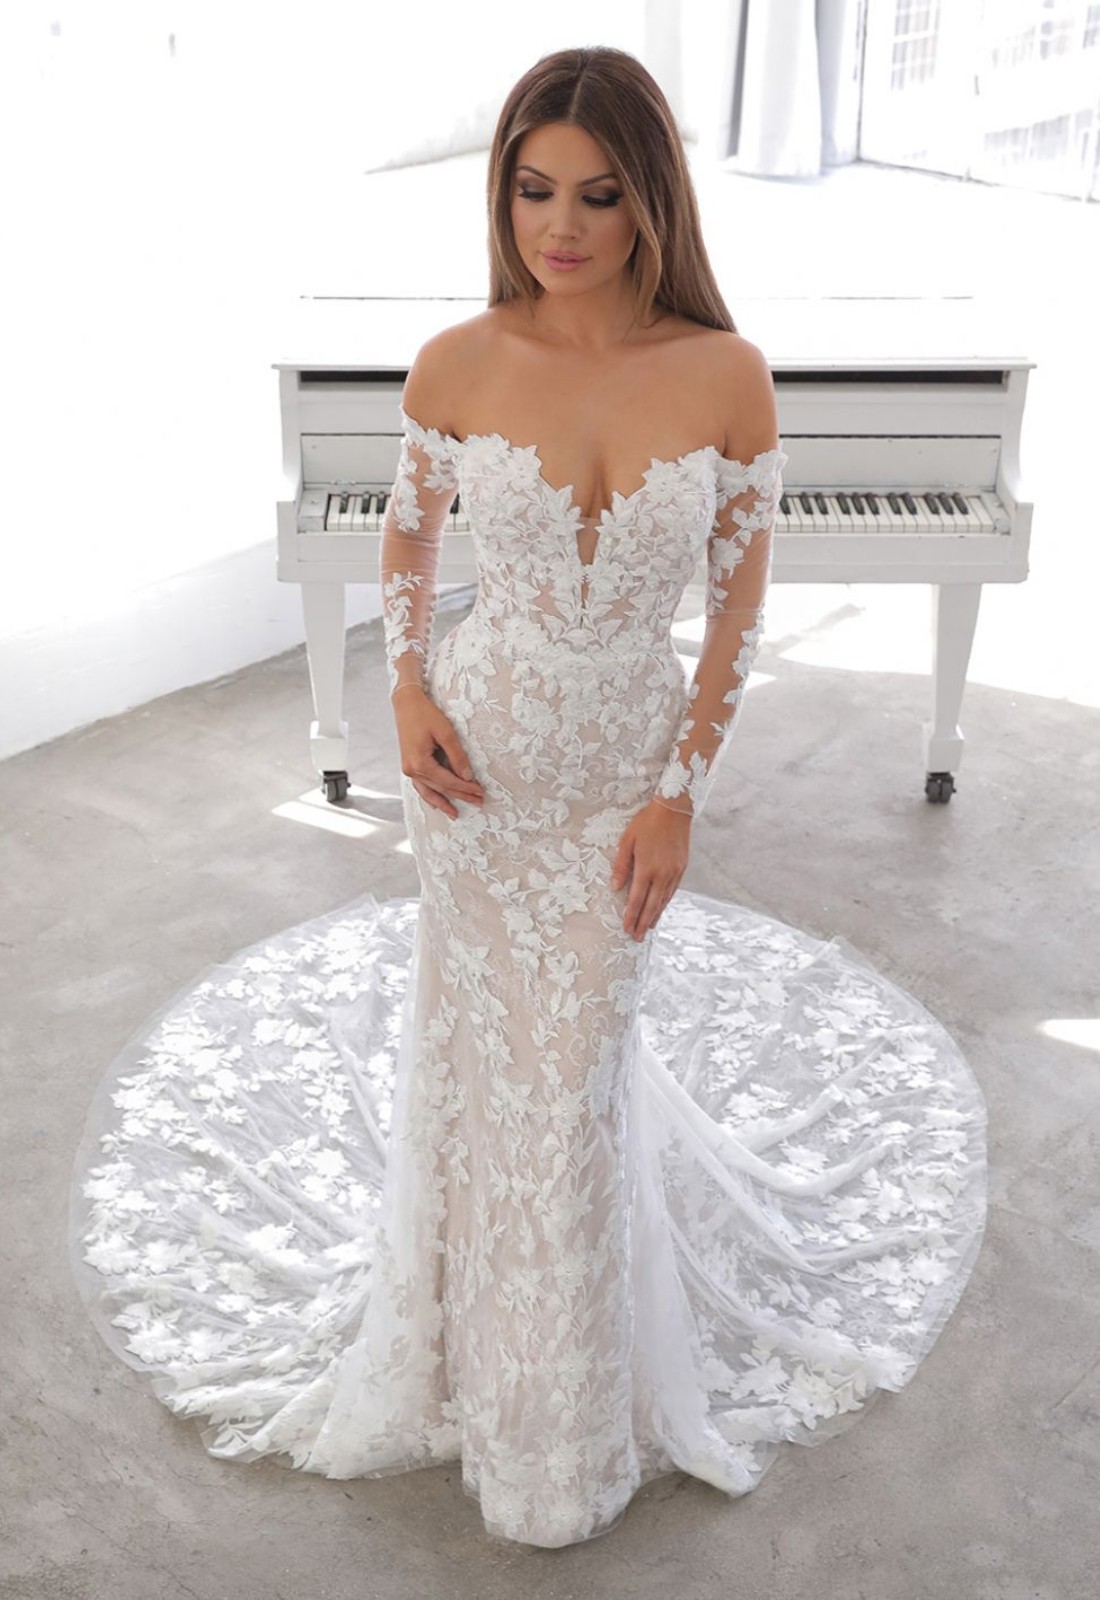 Custom Off White wedding dress designed by Virgil Abloh for Hailey